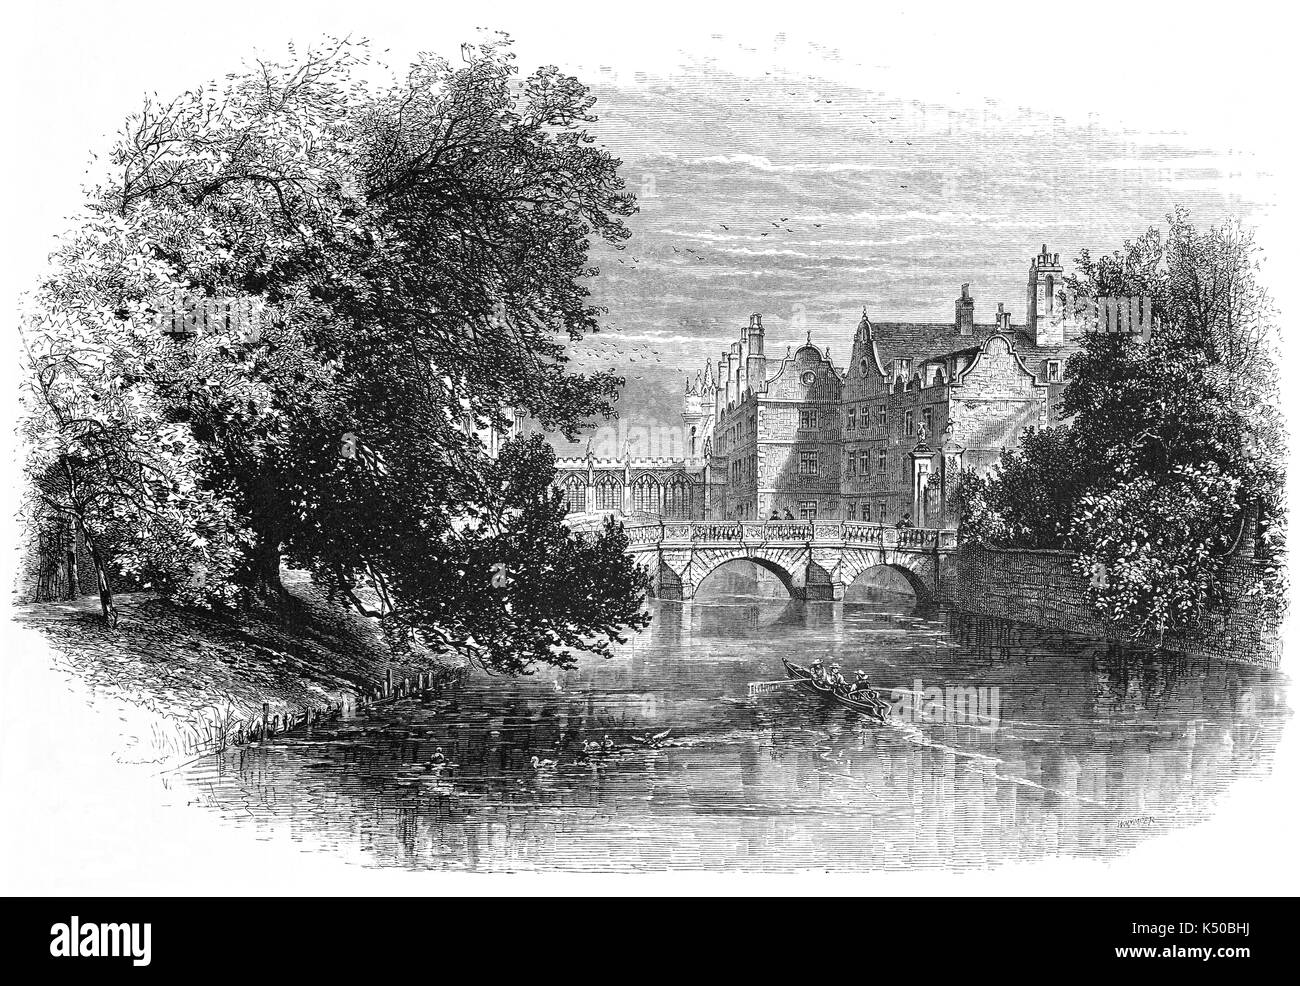 1870: Blick auf den Fluss Cam mit der Küche Brücke (durch Wren um 1710 erbaut) und hinter die neugotische Seufzerbrücke von Henry Hutchinson 1831 entworfen von Henry Hutchinson. Beide sind Teil der St. Johns College, Universität Cambridge, England Stockfoto